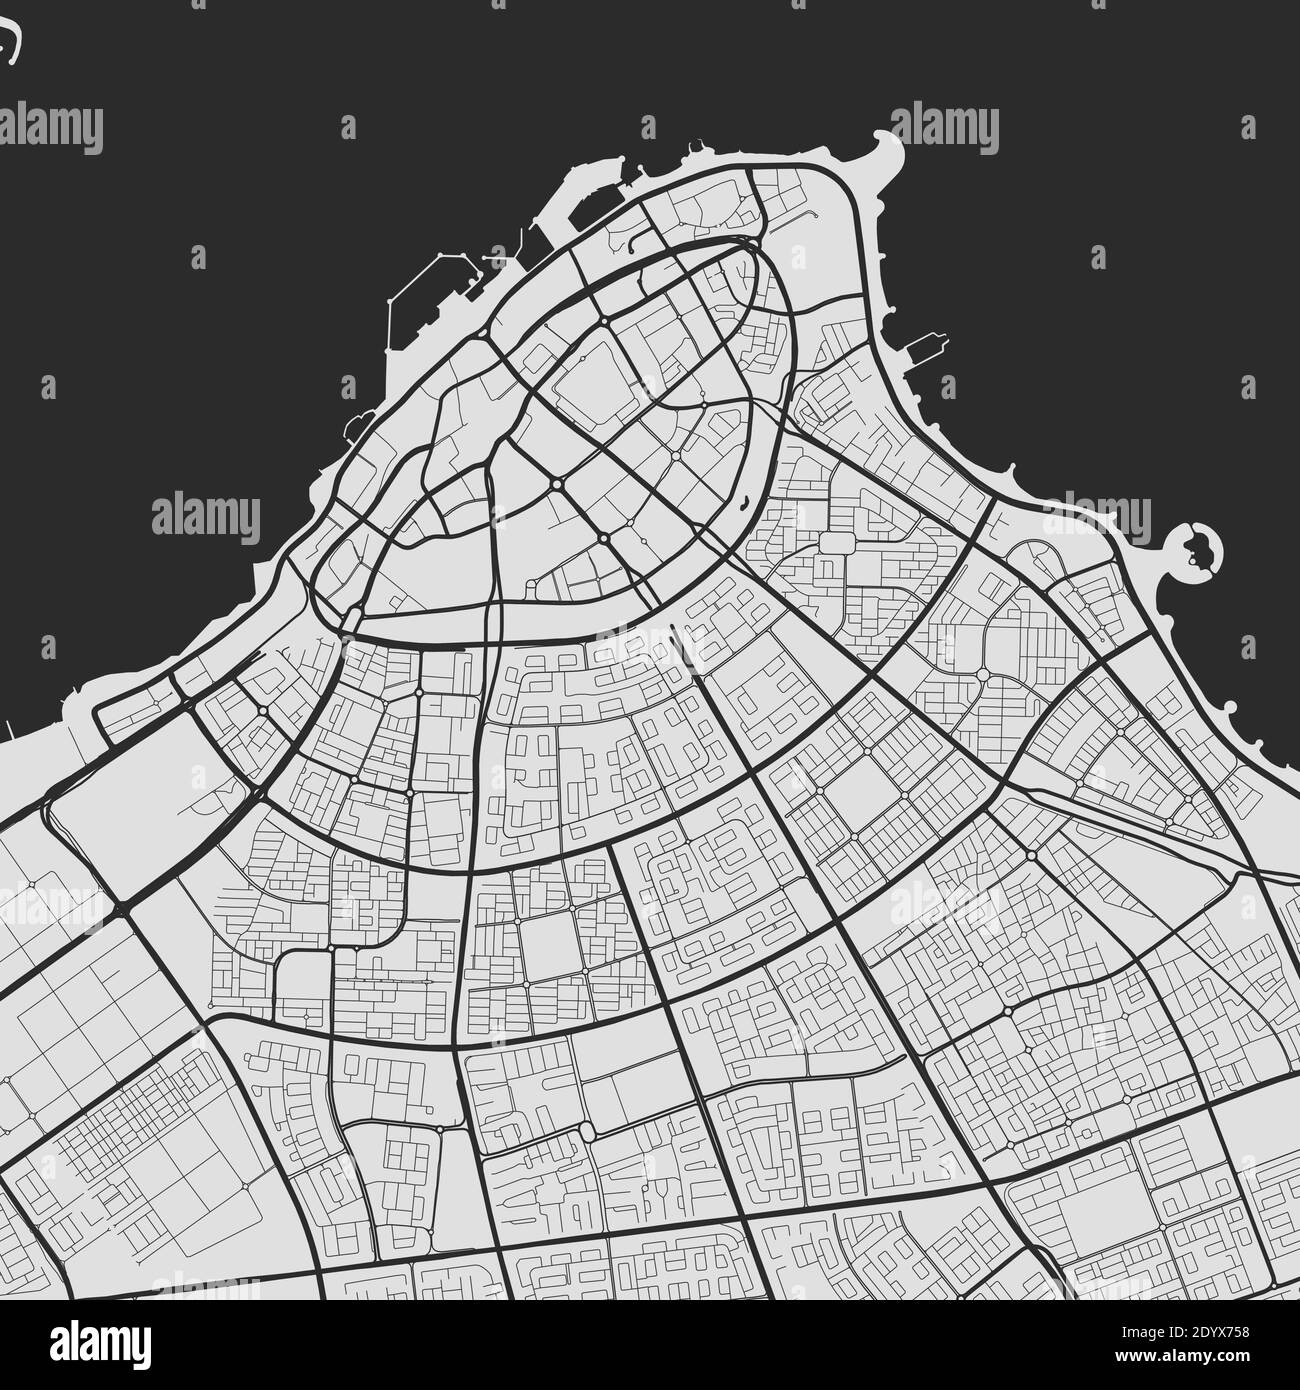 Stadtkarte von Kuwait. Vektor-Illustration, Kuwait Karte Graustufen Kunstposter. Straßenkarte mit Straßen, Ansicht der Metropolregion. Stock Vektor